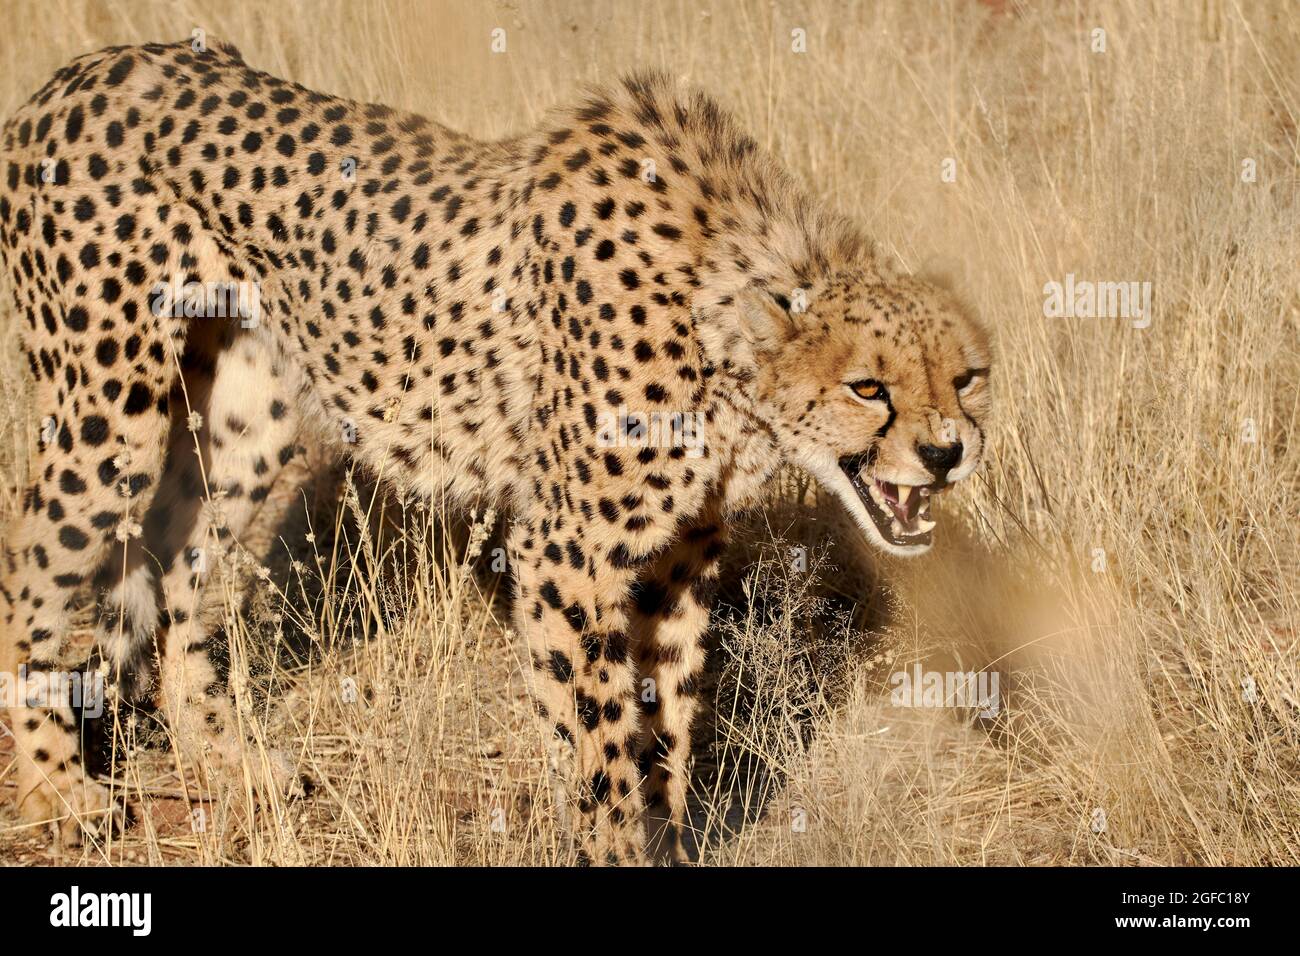 Le Cheetah africain (Acinonyx jubatus) s'arrache dans les prairies de Namibie, en Afrique. Banque D'Images